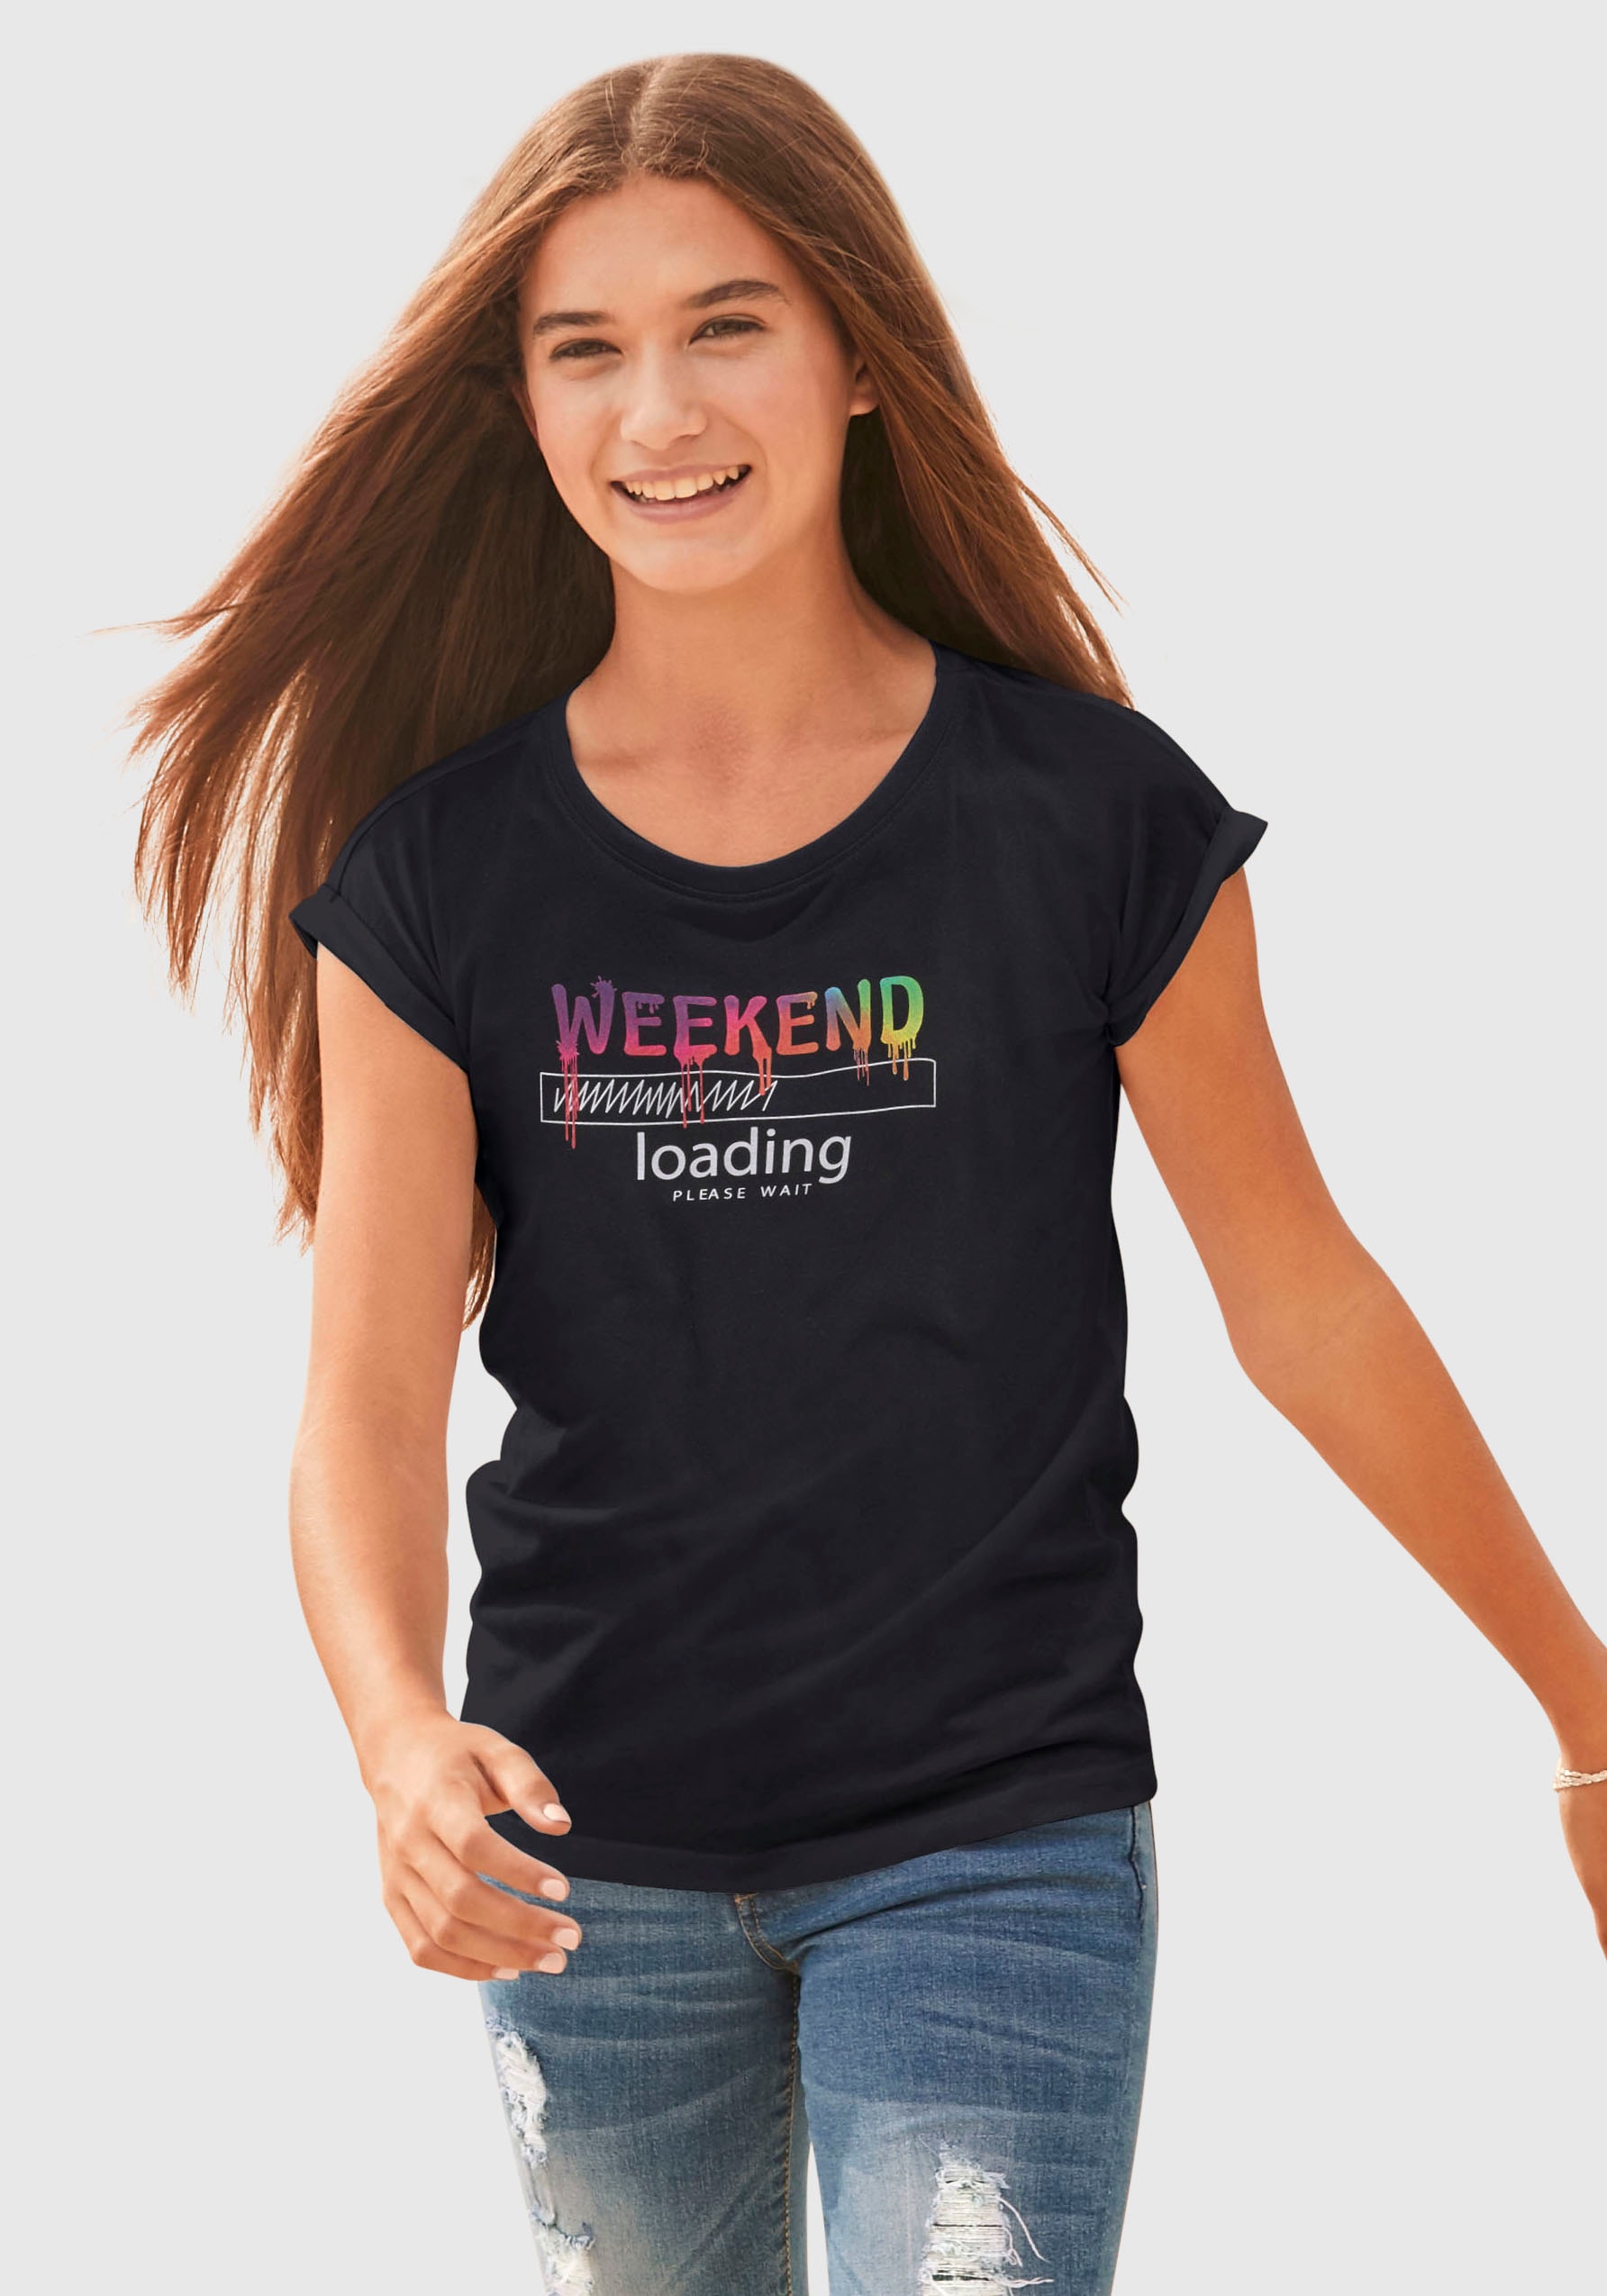 ✵ KIDSWORLD T-Shirt Form, weiter in loading...please legerer wait«, sind »WEEKEND online kaufen Jelmoli-Versand unterschiedlich | Regenbogen-Druckfarben